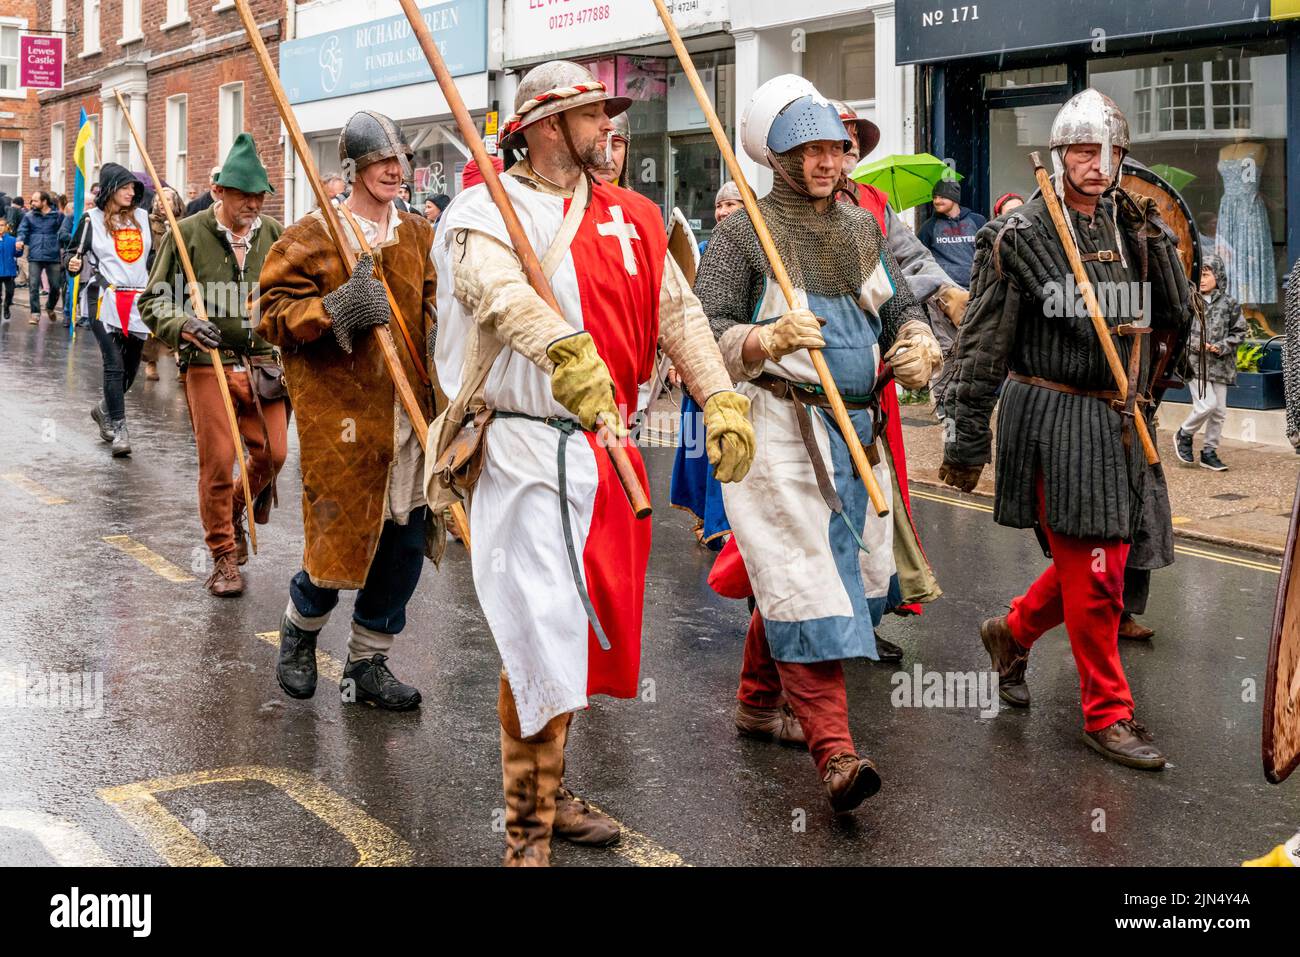 Las personas vestidas con trajes medievales participan en una procesión por las calles de Lewes durante el evento de la Batalla de Lewes para el Re-Enactment, Lewes, Reino Unido. Foto de stock